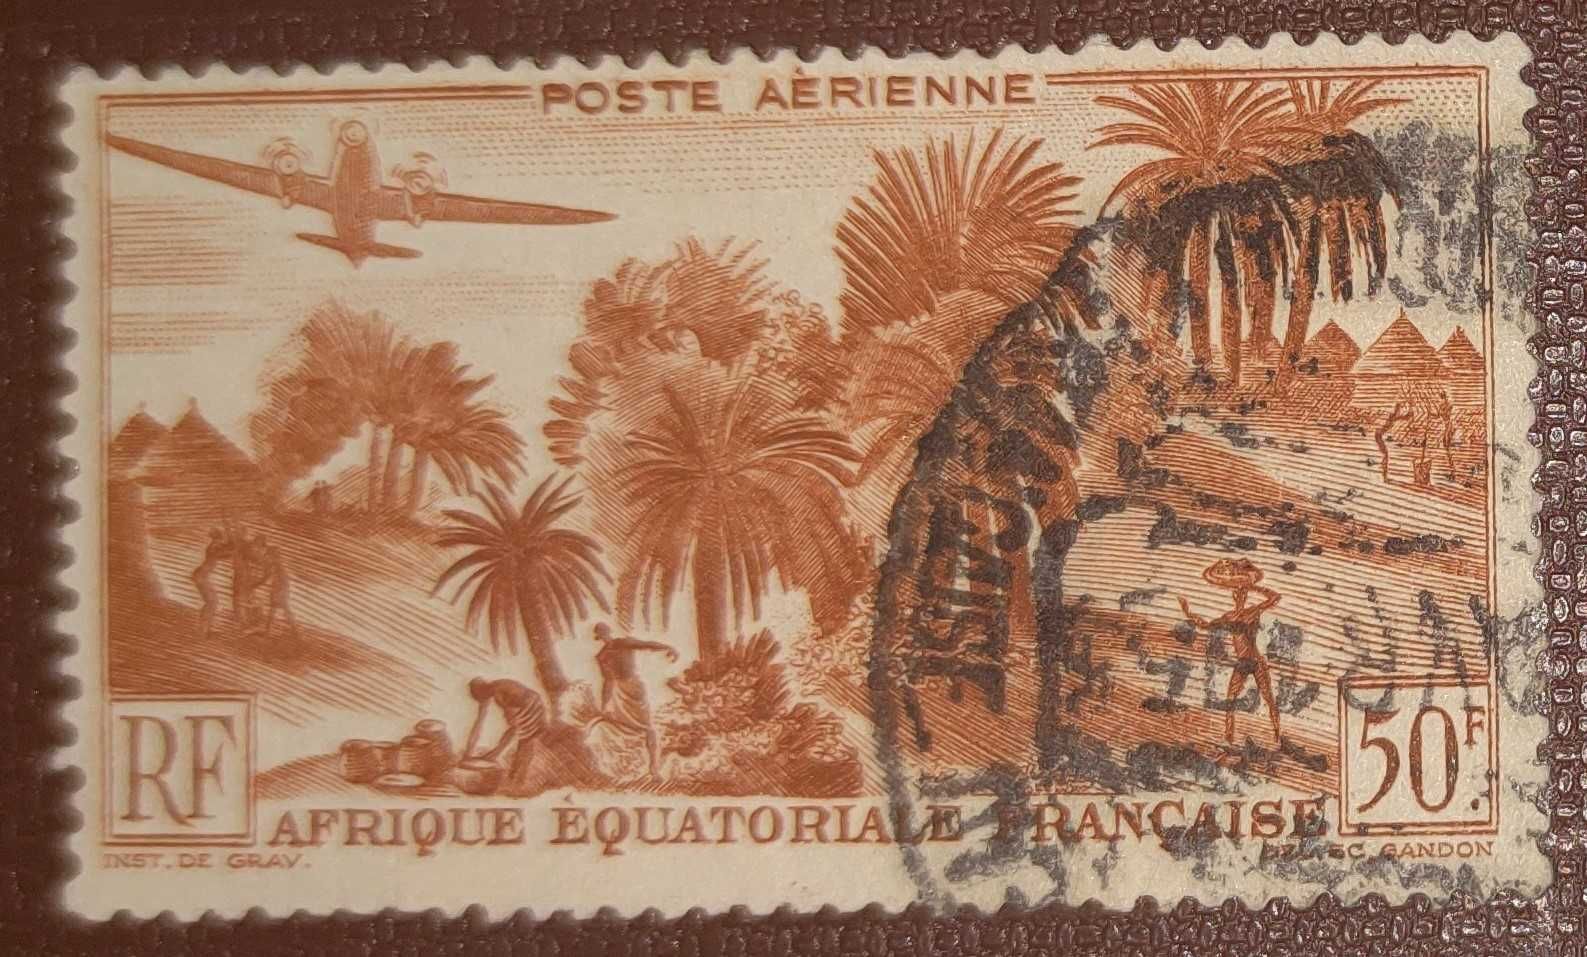 Znaczki pocztowe - Francuska Afryka Równikowa - Mi 281